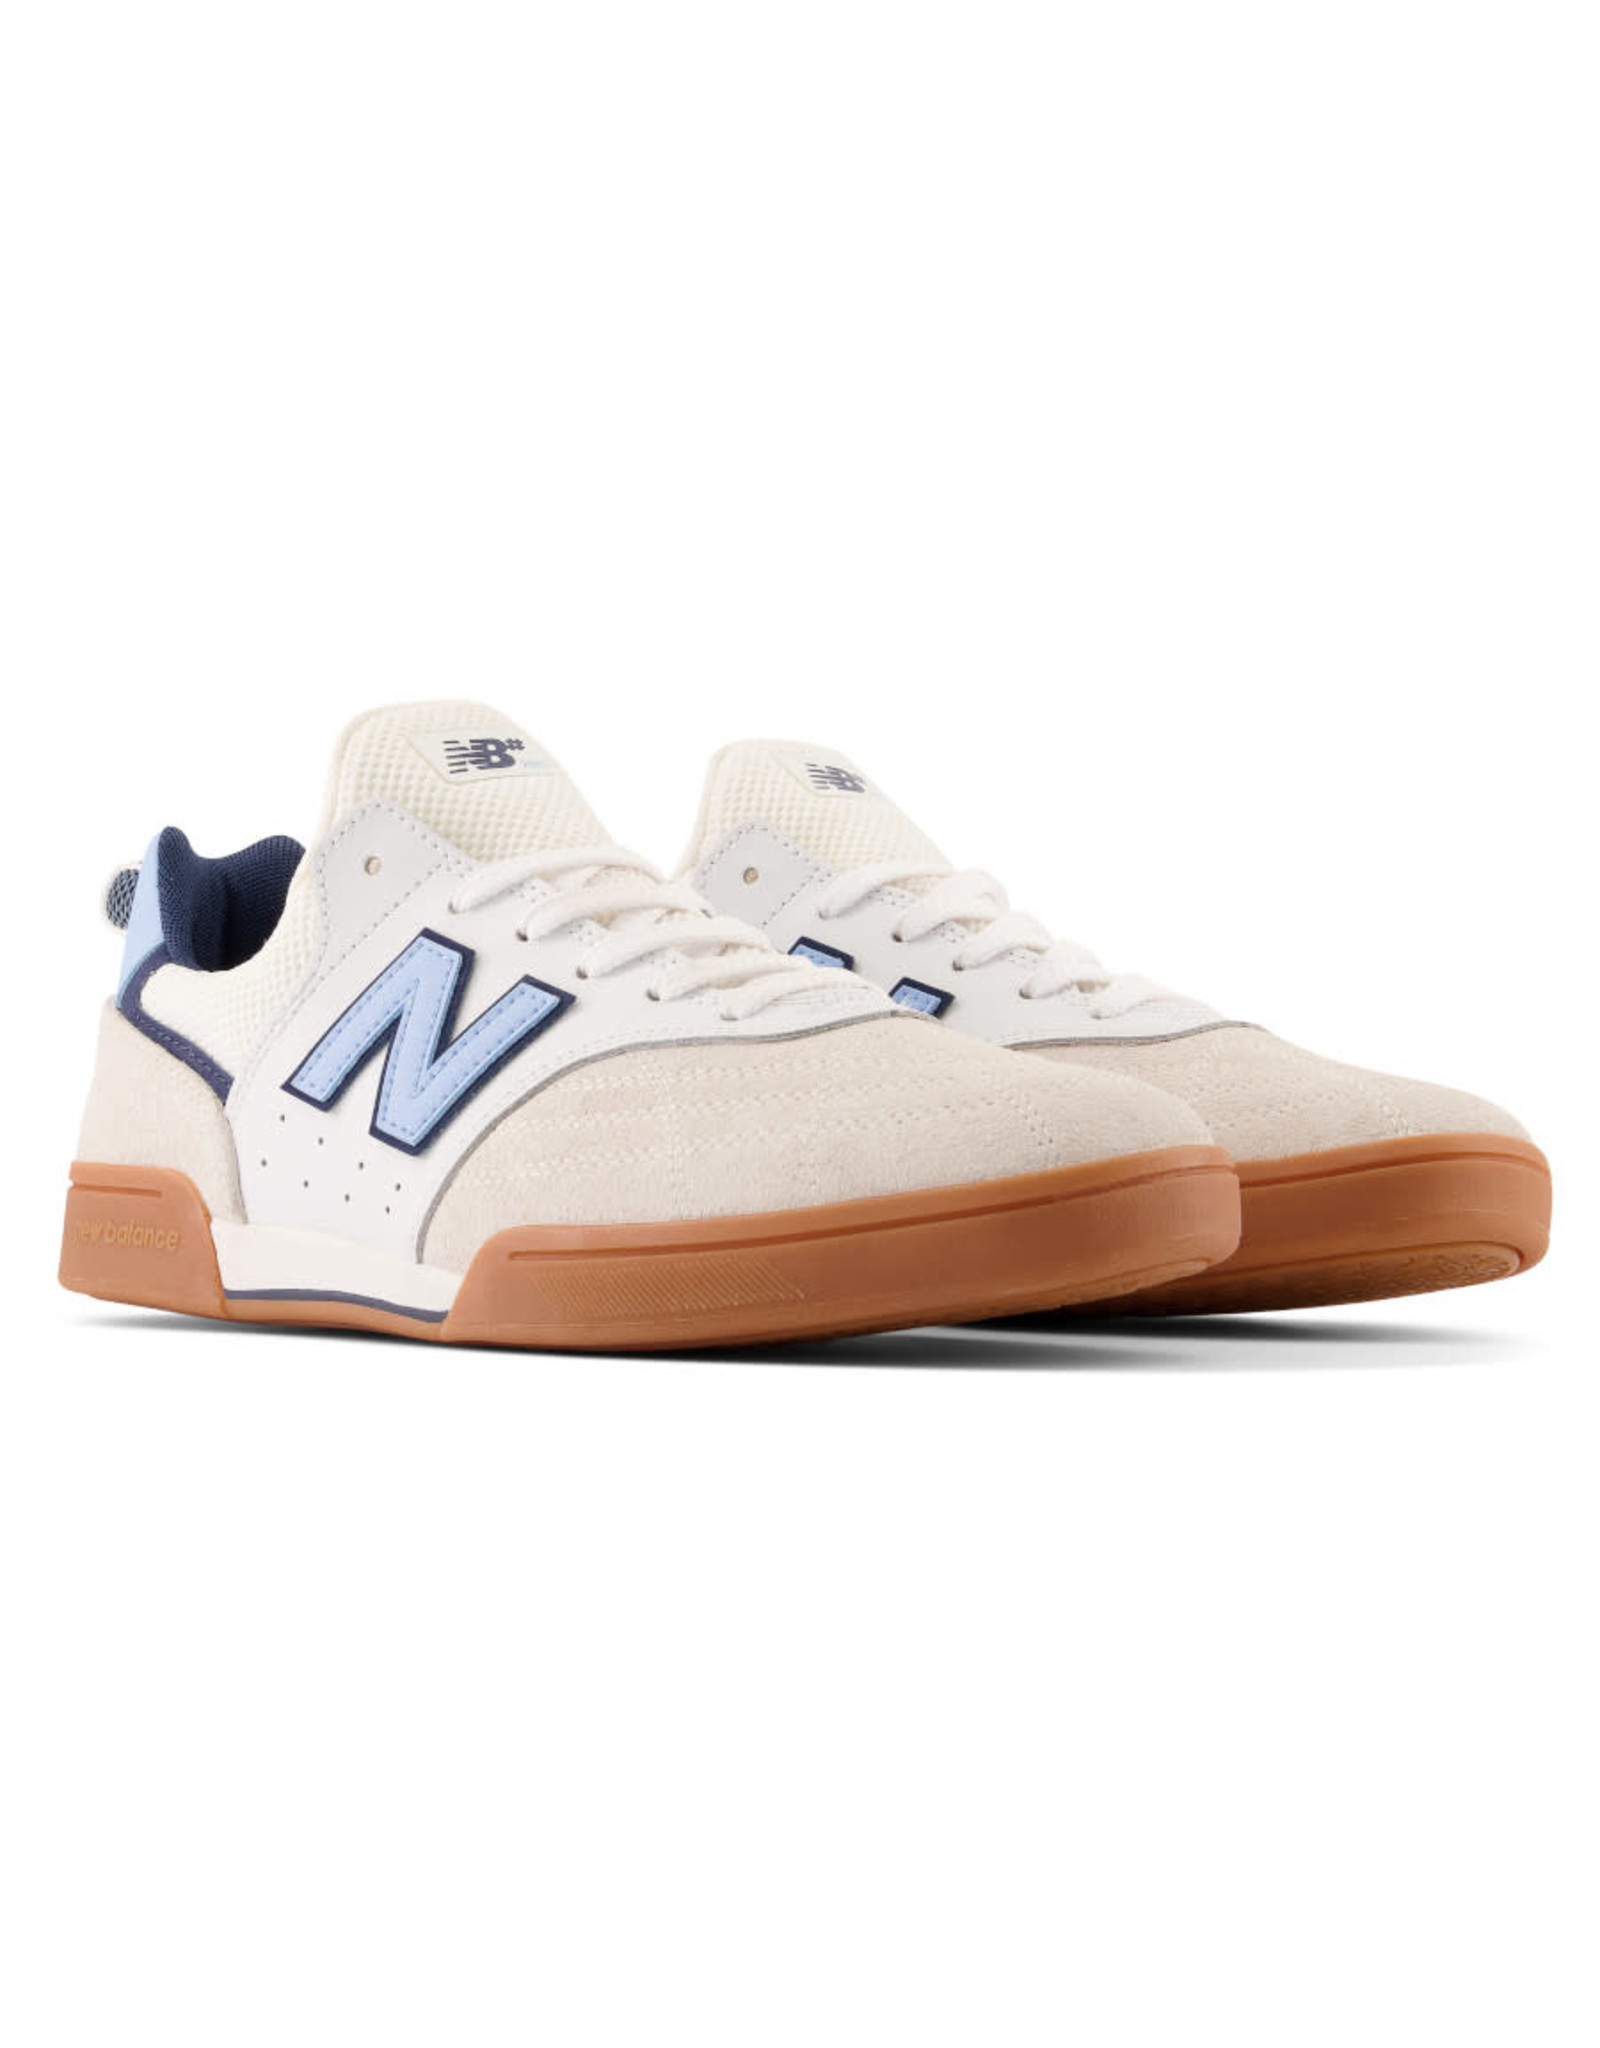 New Balance Numeric New Balance Numeric Shoe 288 (White/Blue/Gum)